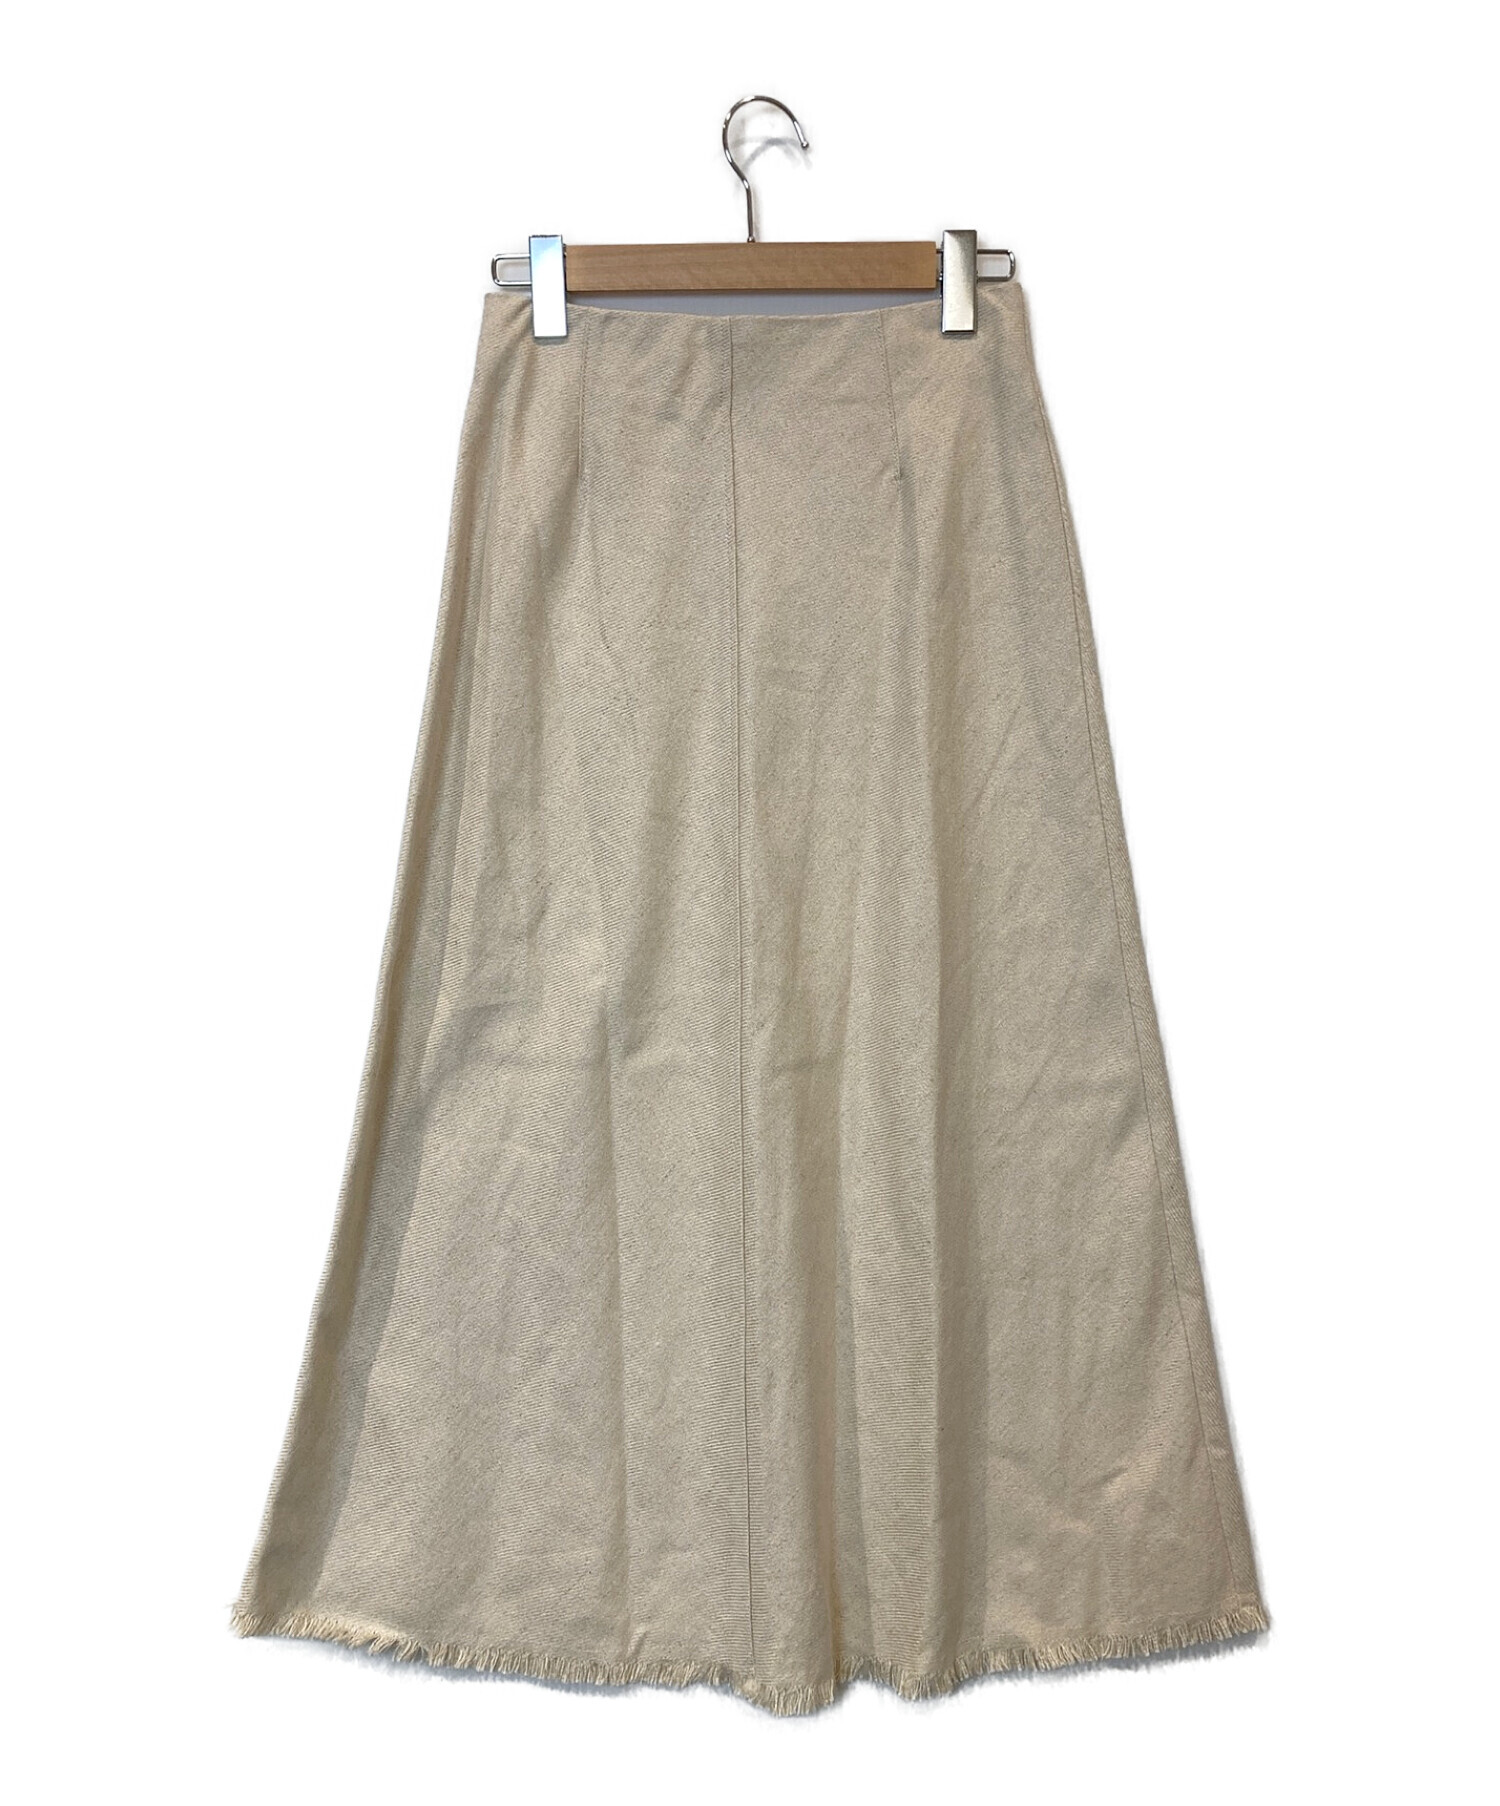 Spick and Span (スピックアンドスパン) カラーブロックロングフレアースカート アイボリー サイズ:38 未使用品